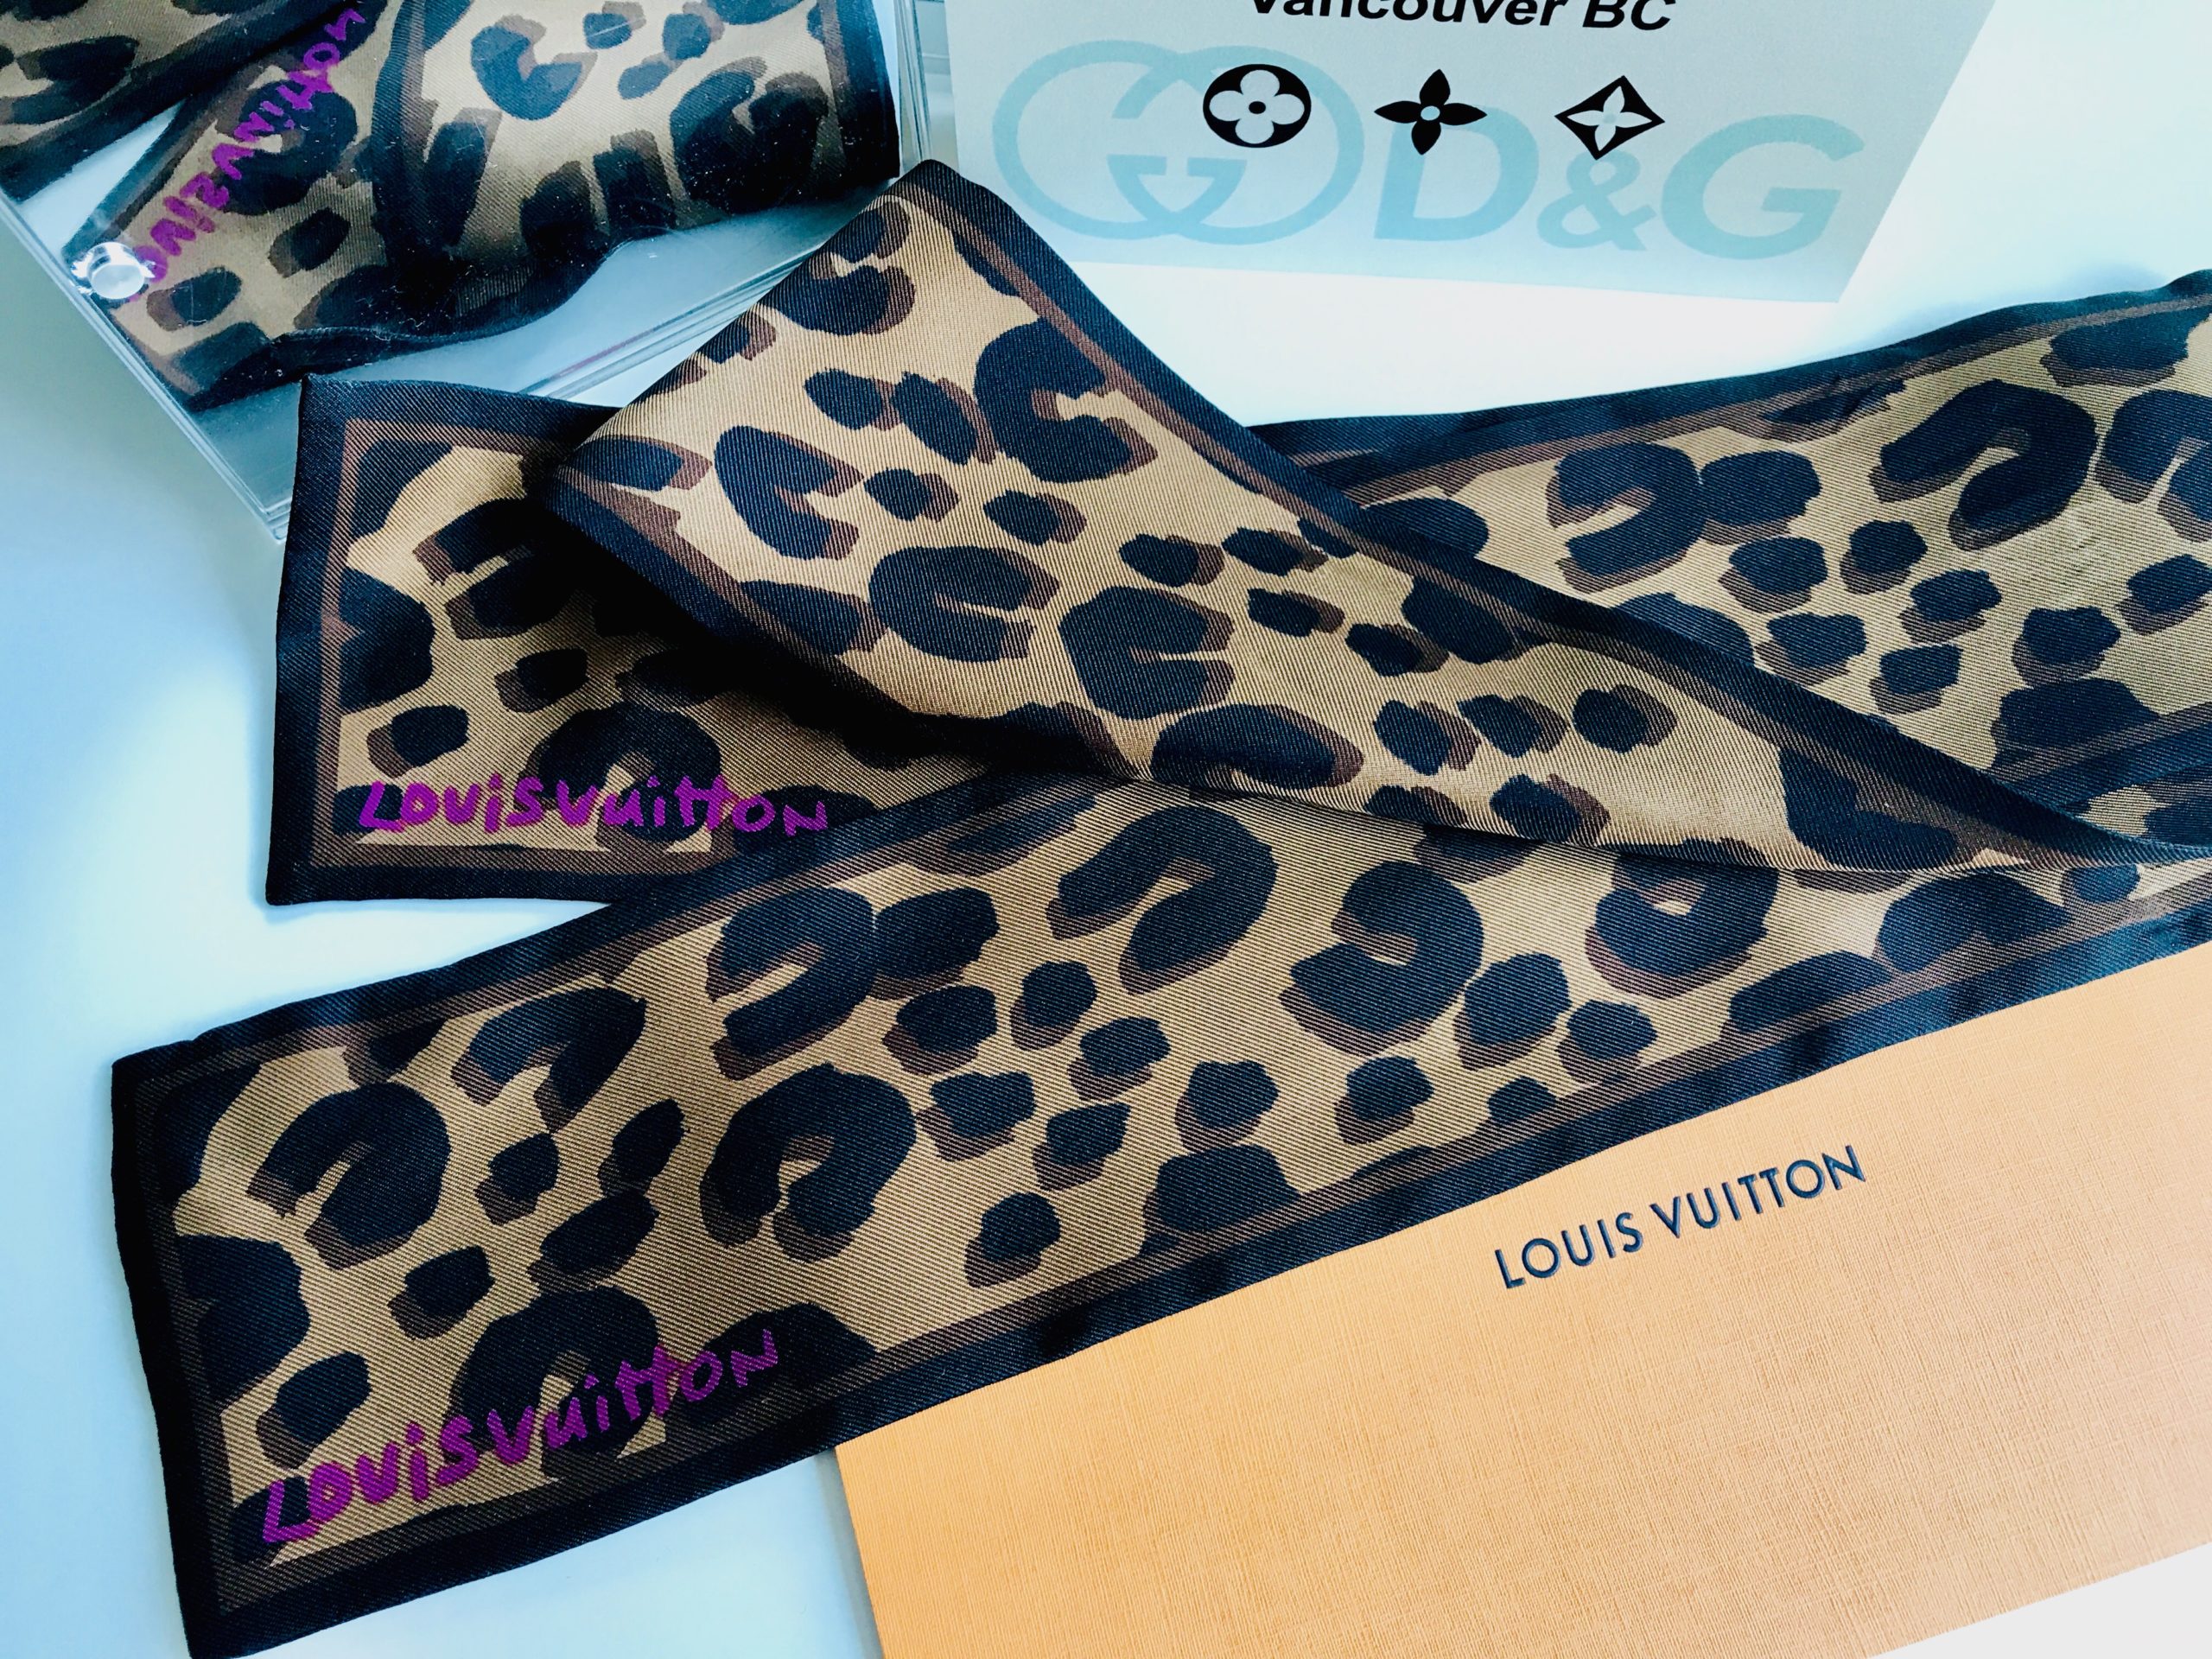 Authentic LOUIS VUITTON Bandeau Leopard Silk 100% Scarf Brown M72394 LV #3